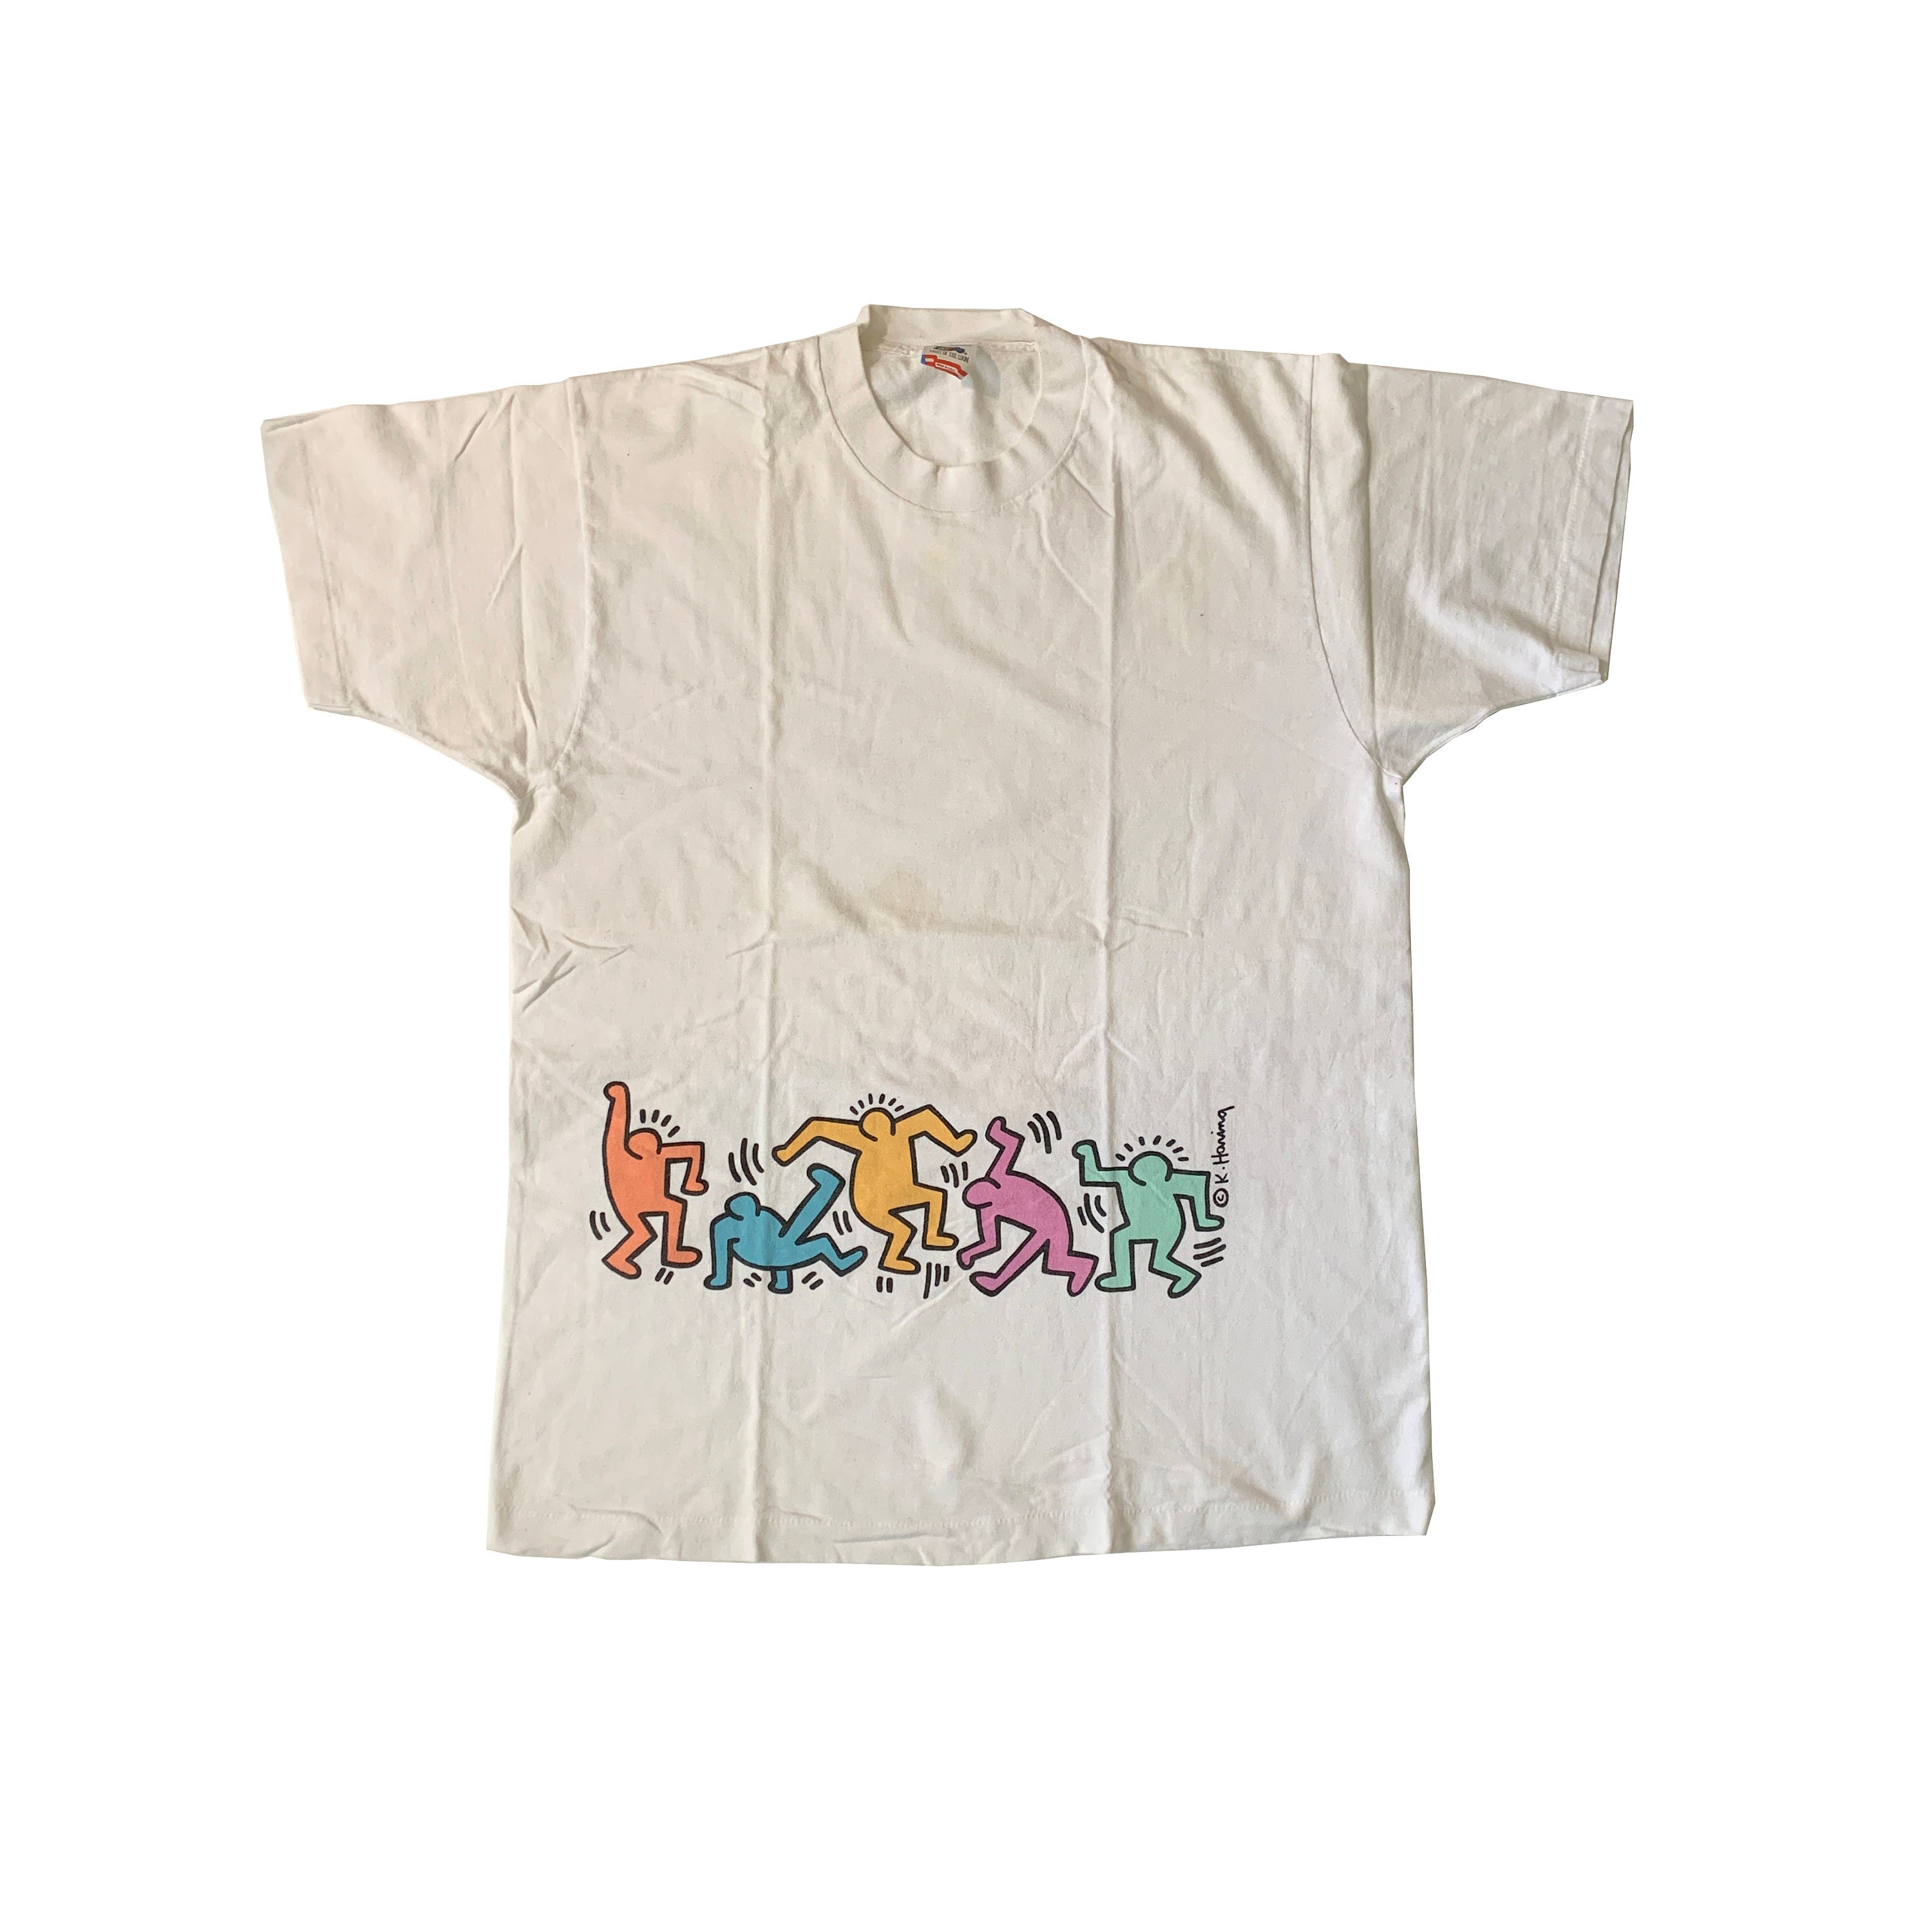 Keith Haring Shirt Vintage - Etsy